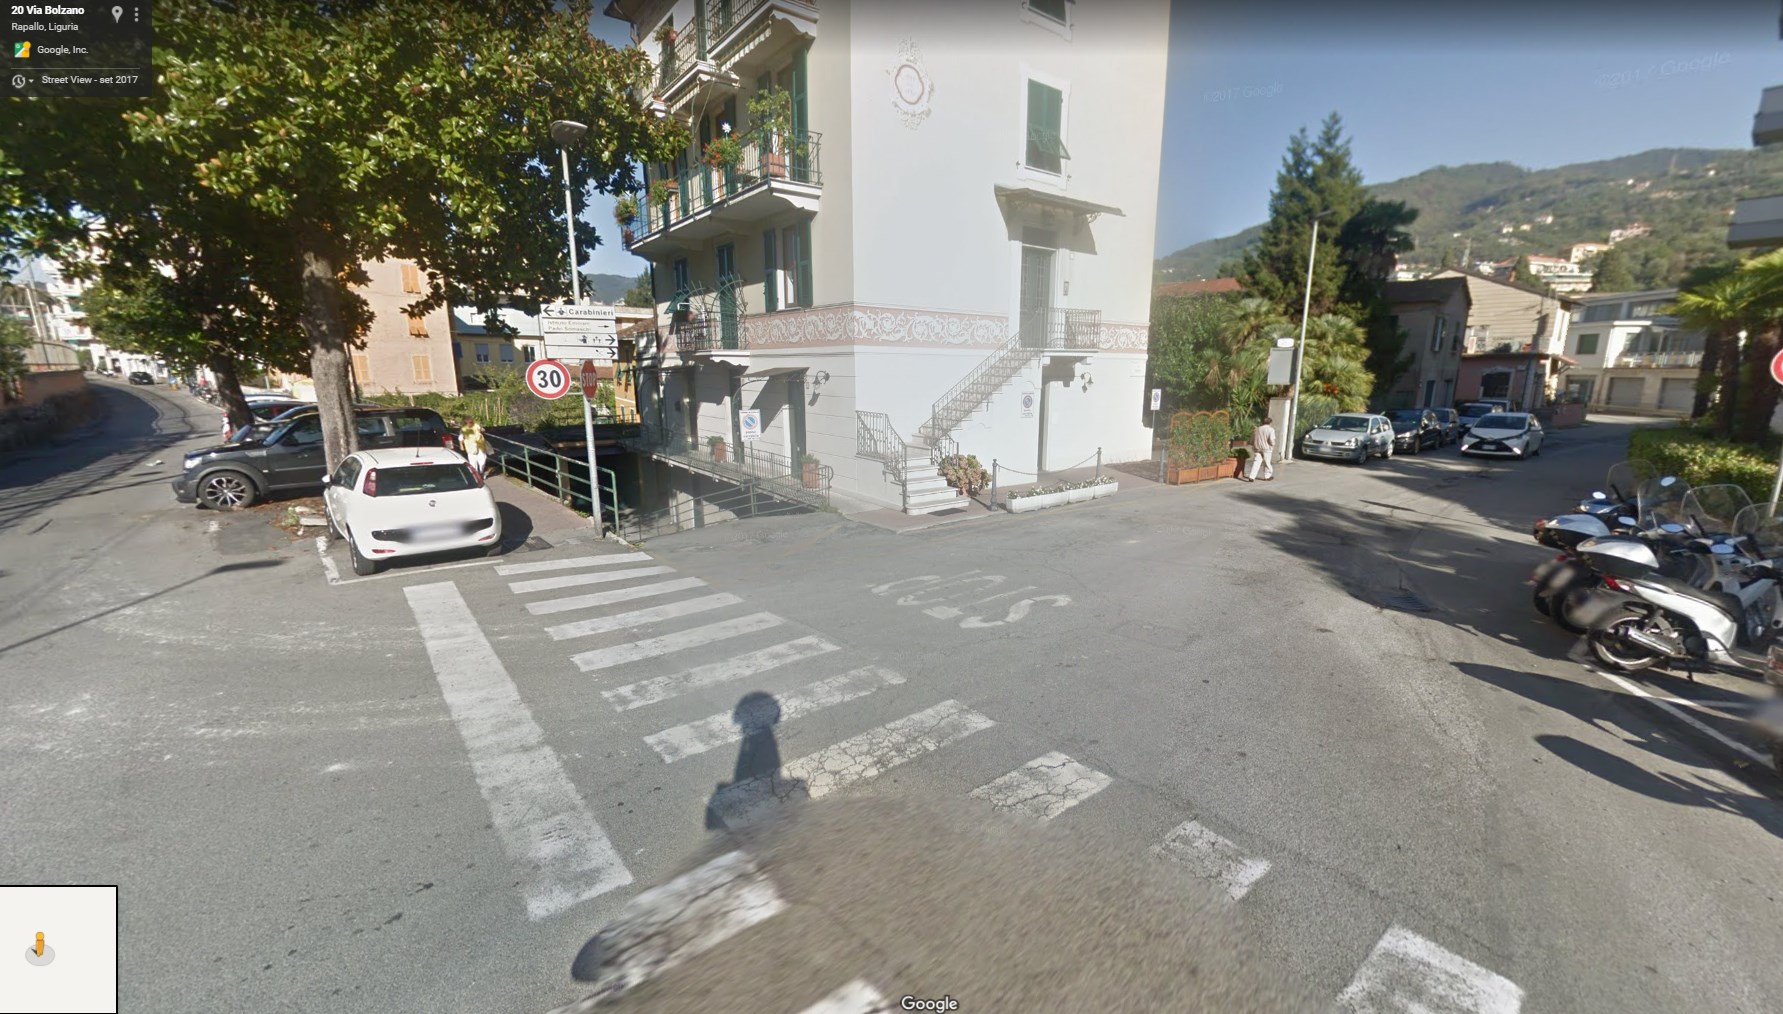 2018 03 09 17 12 24 20 Via Bolzano Google Maps